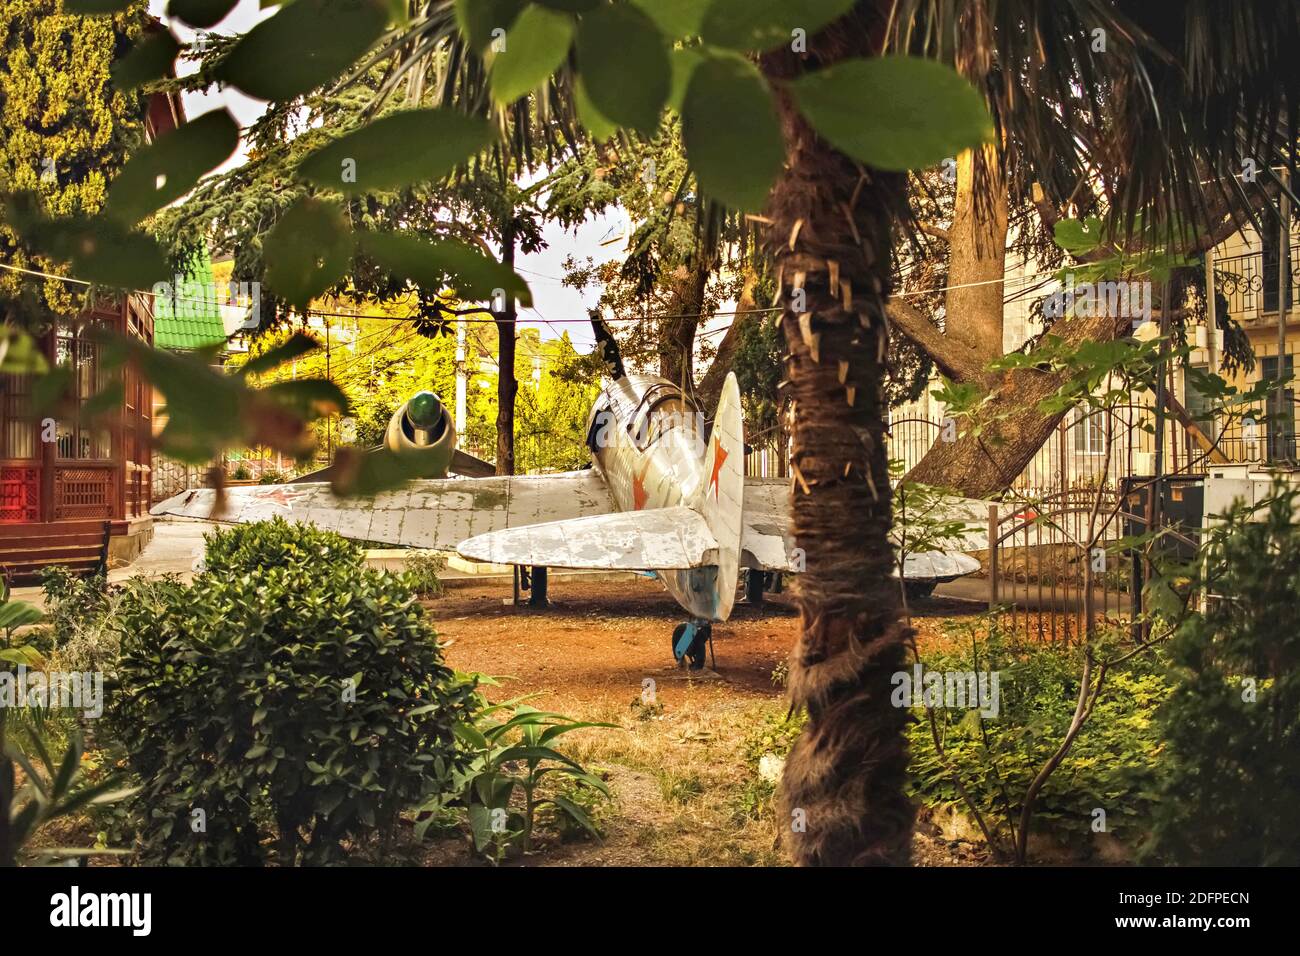 L'ancien avion militaire s'est écrasé dans la jungle. Banque D'Images